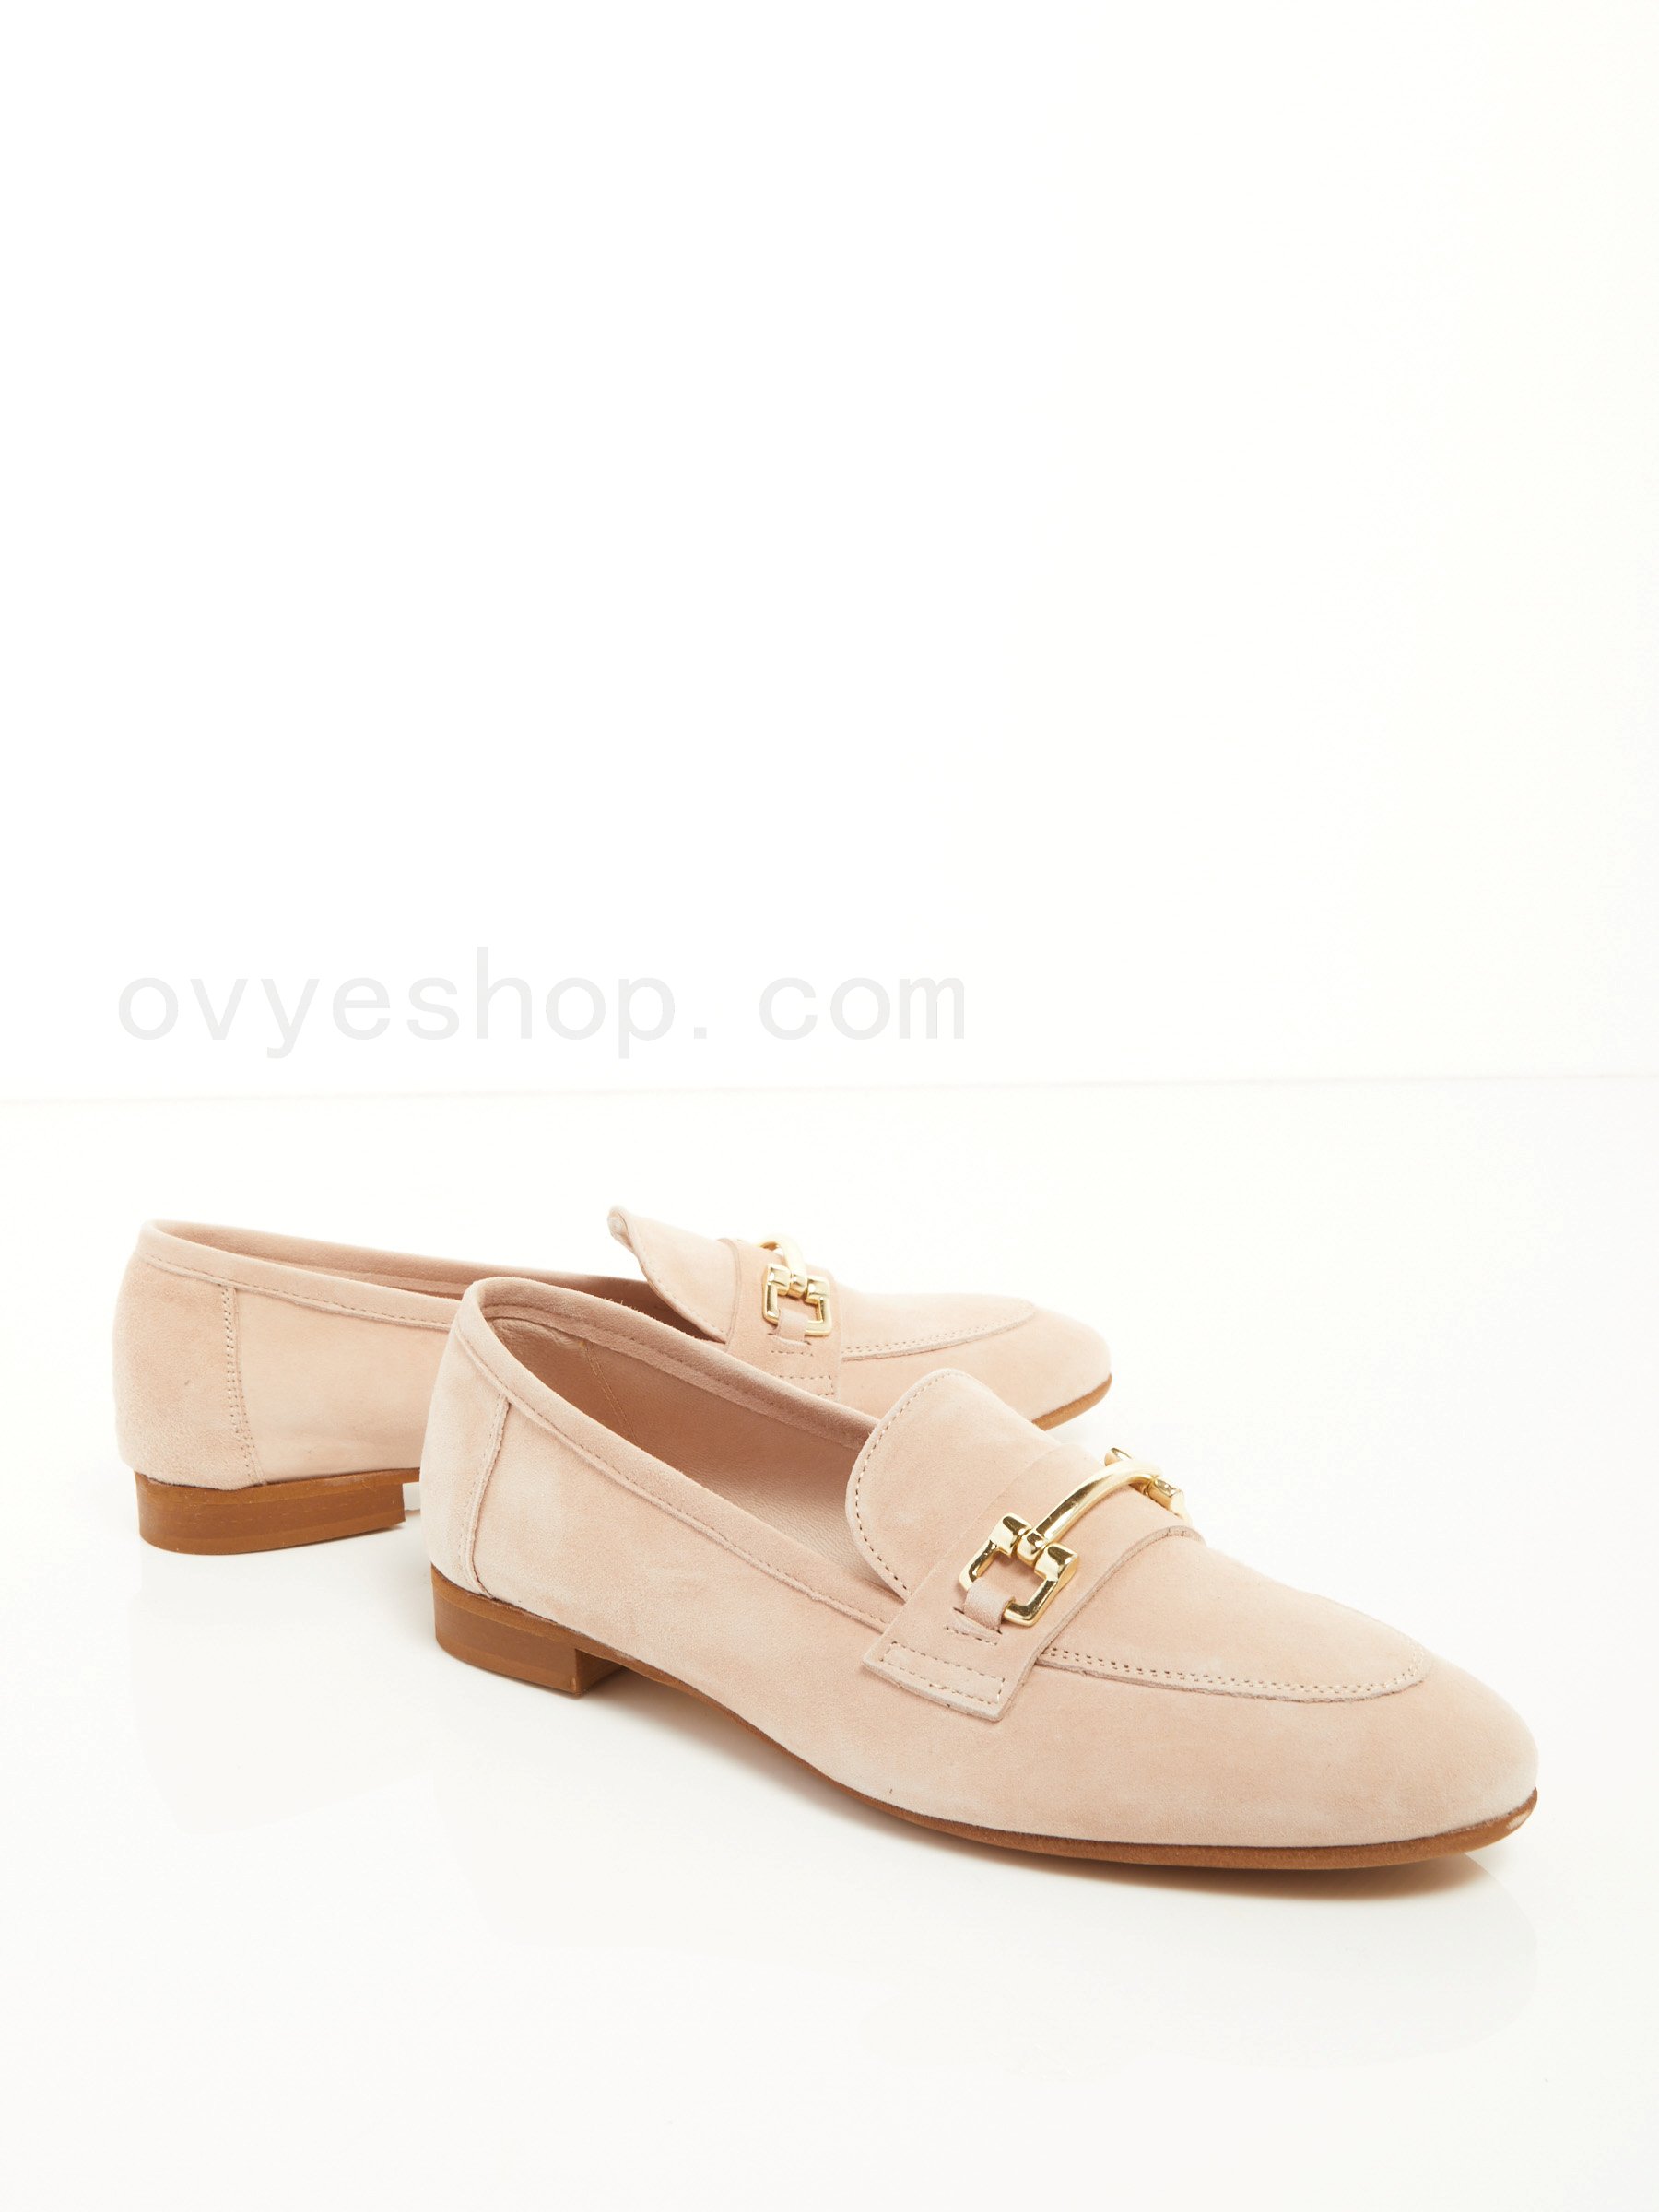 (image for) Negozi Online Suede Loafer F0817885-0630 ovye scarpe shop online